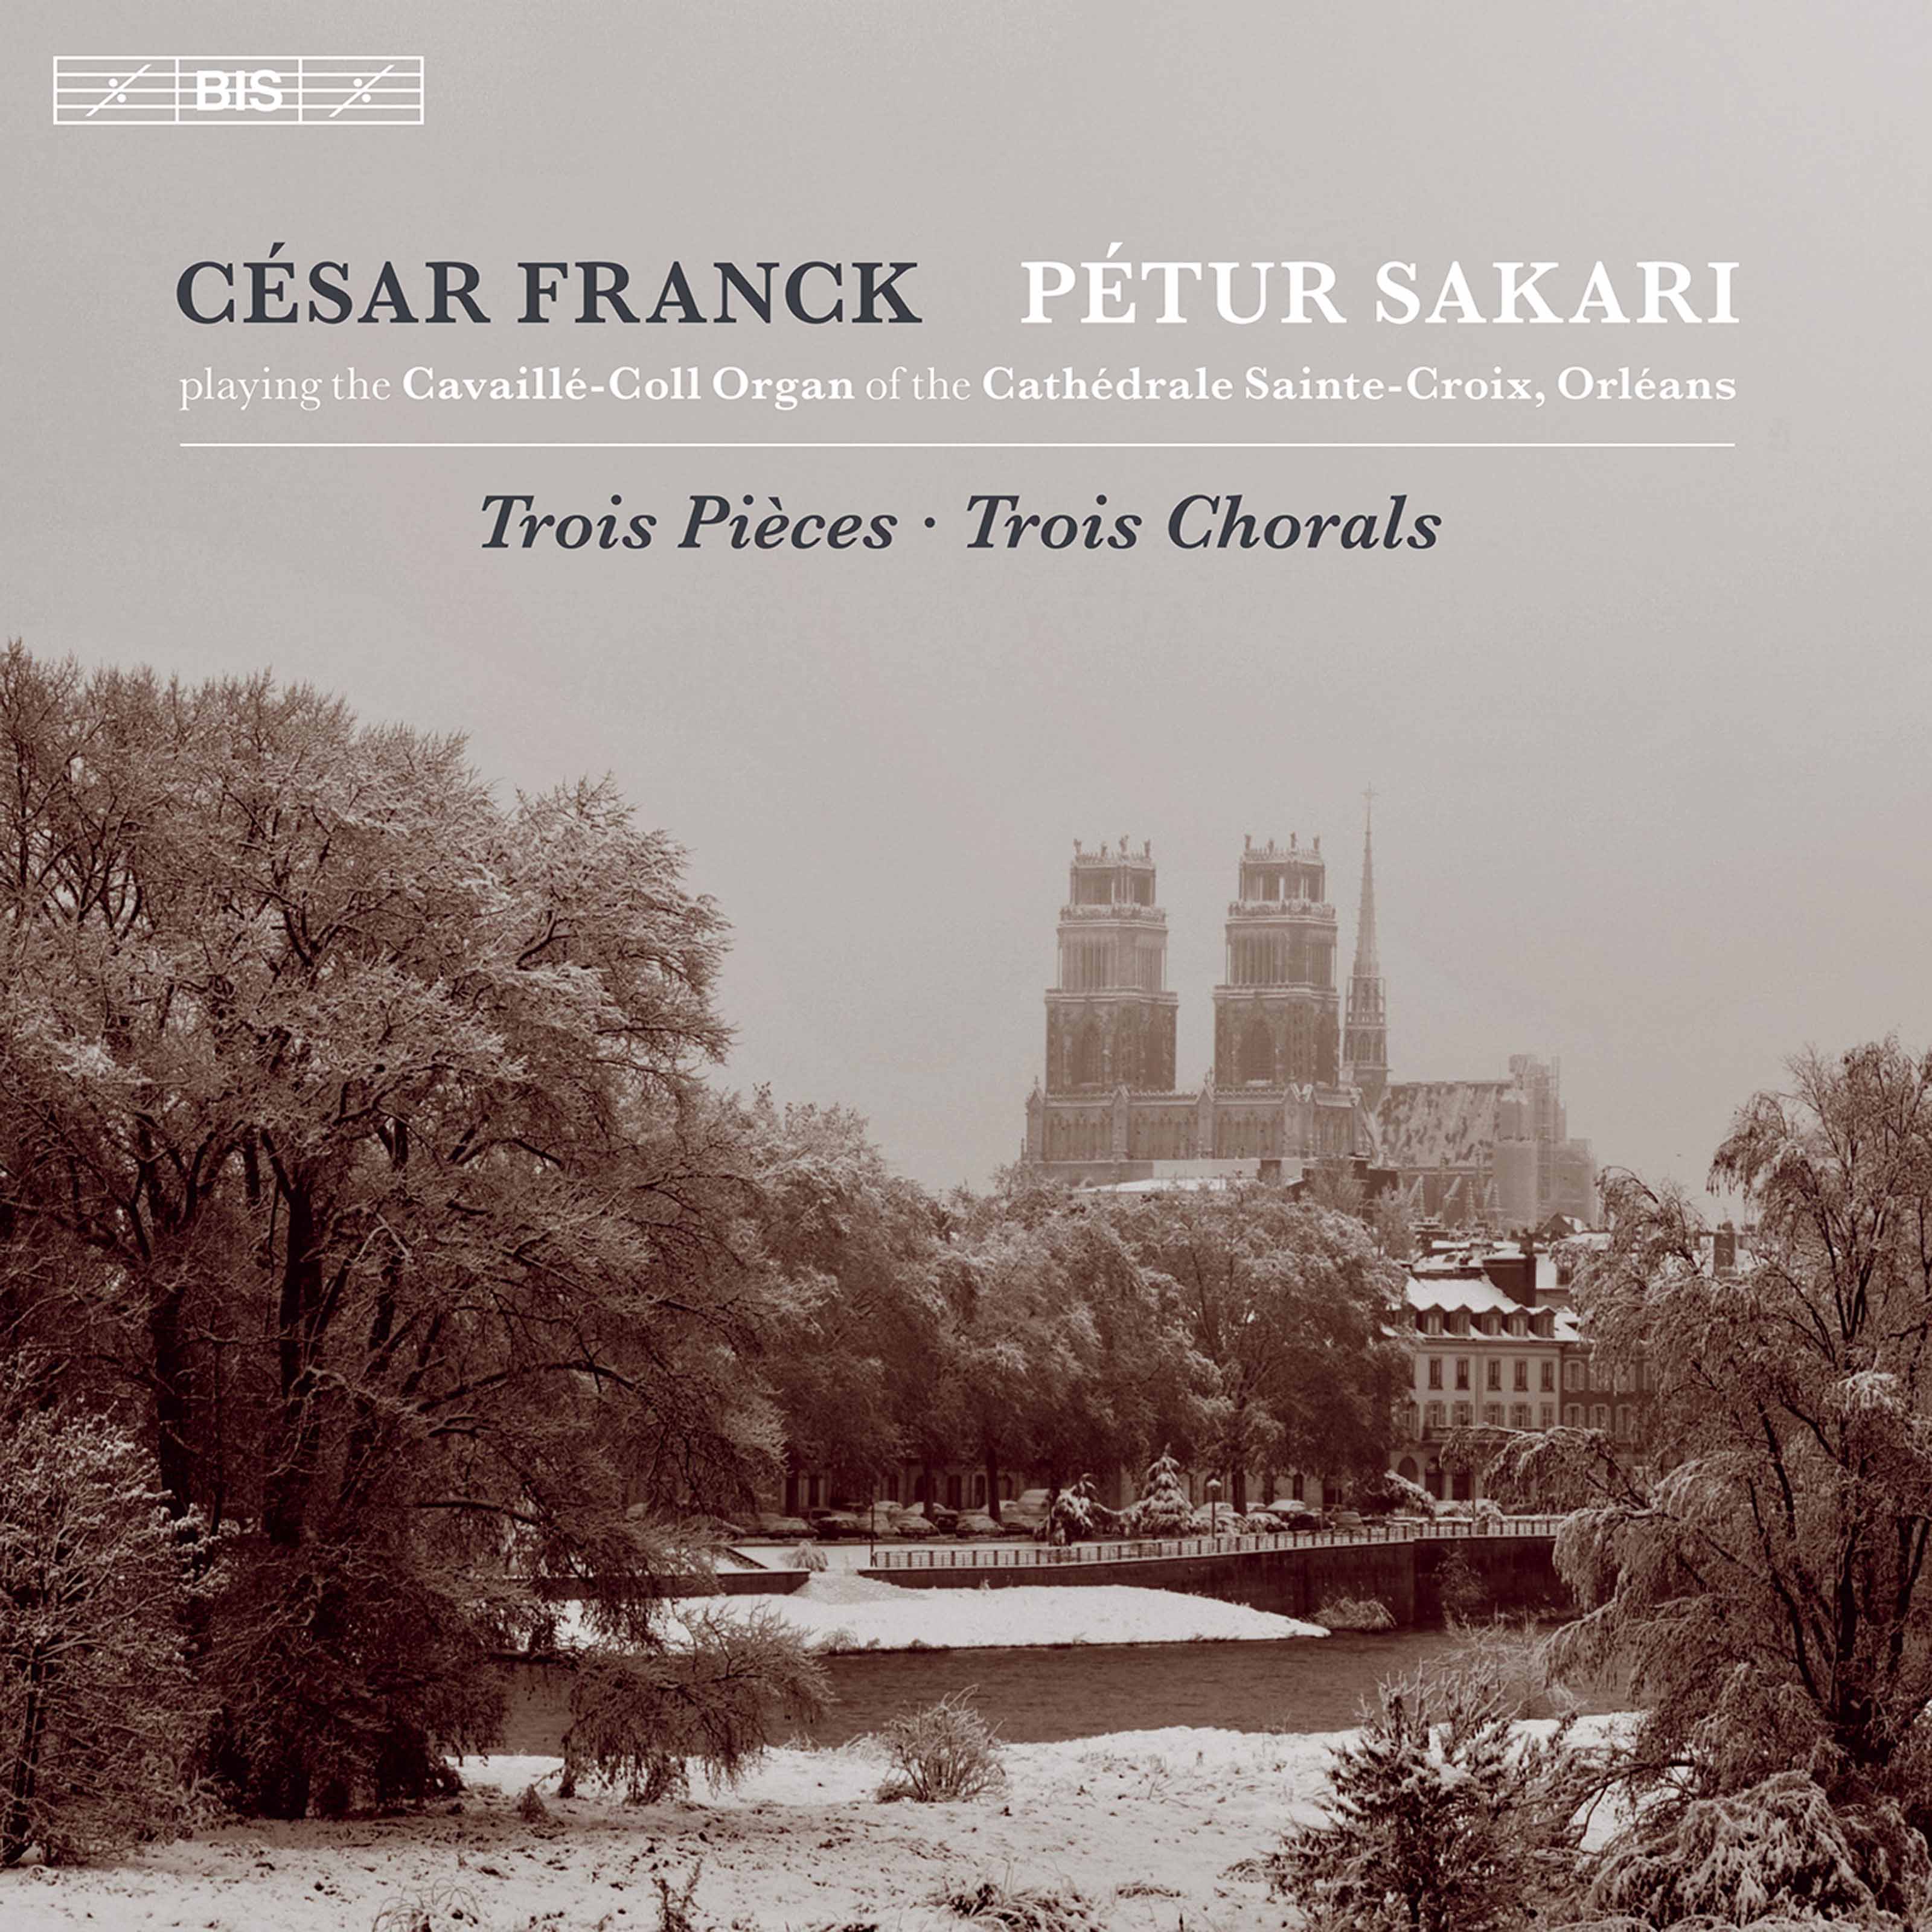 Petur Sakari – Franck: Chorals et Pieces pour grand orgue (2021) [FLAC 24bit/96kHz]